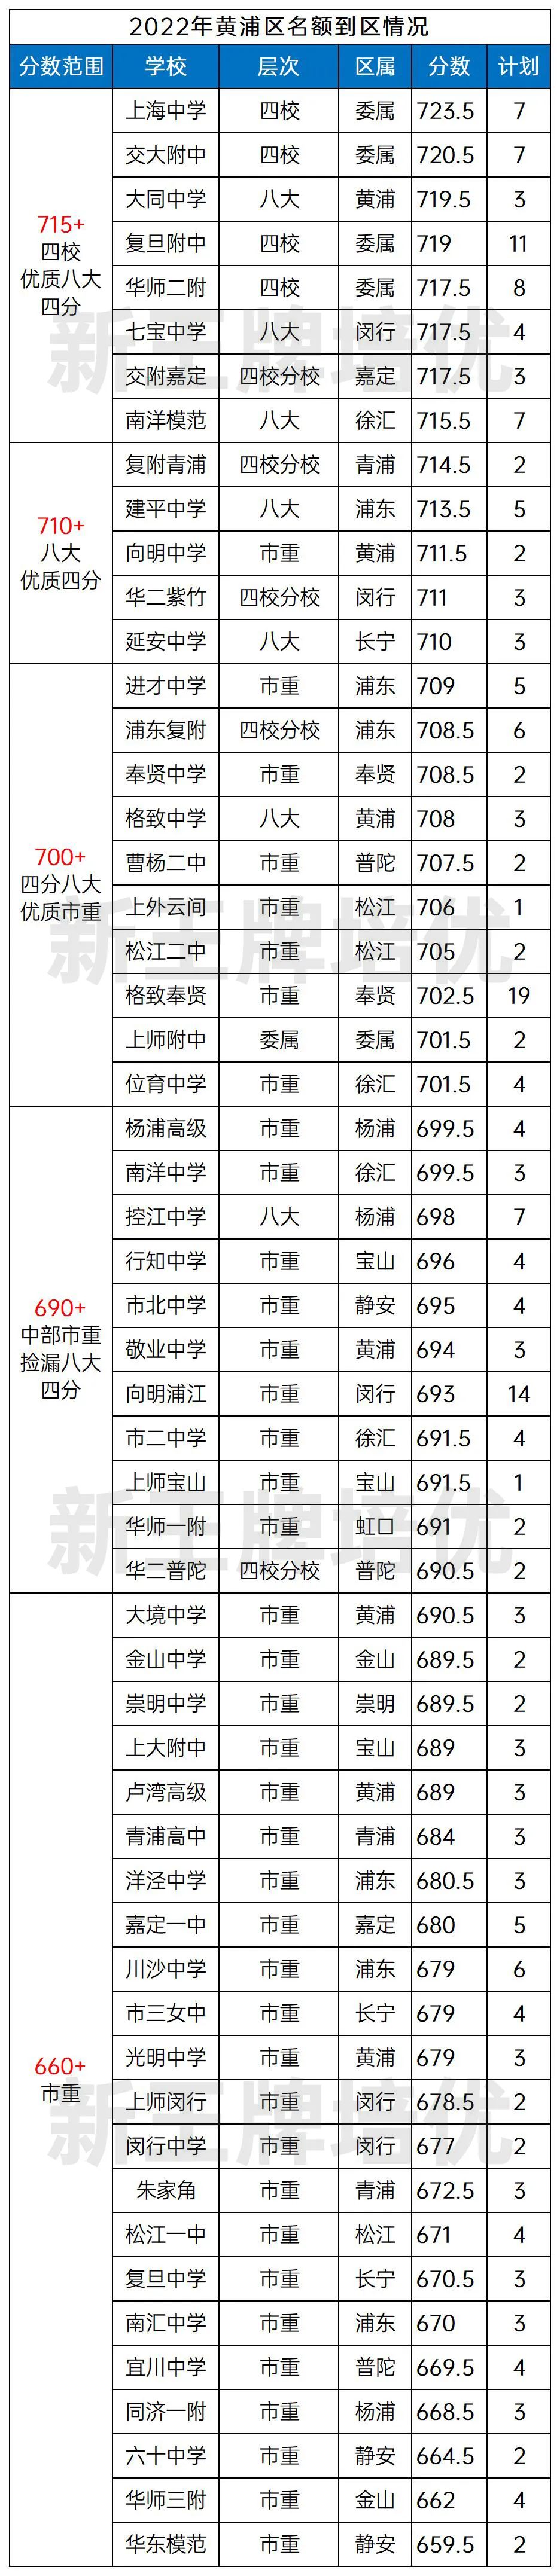 其他区的情况已经汇总在《上海中考名额到区数据参考（分区）》，文末可领取！